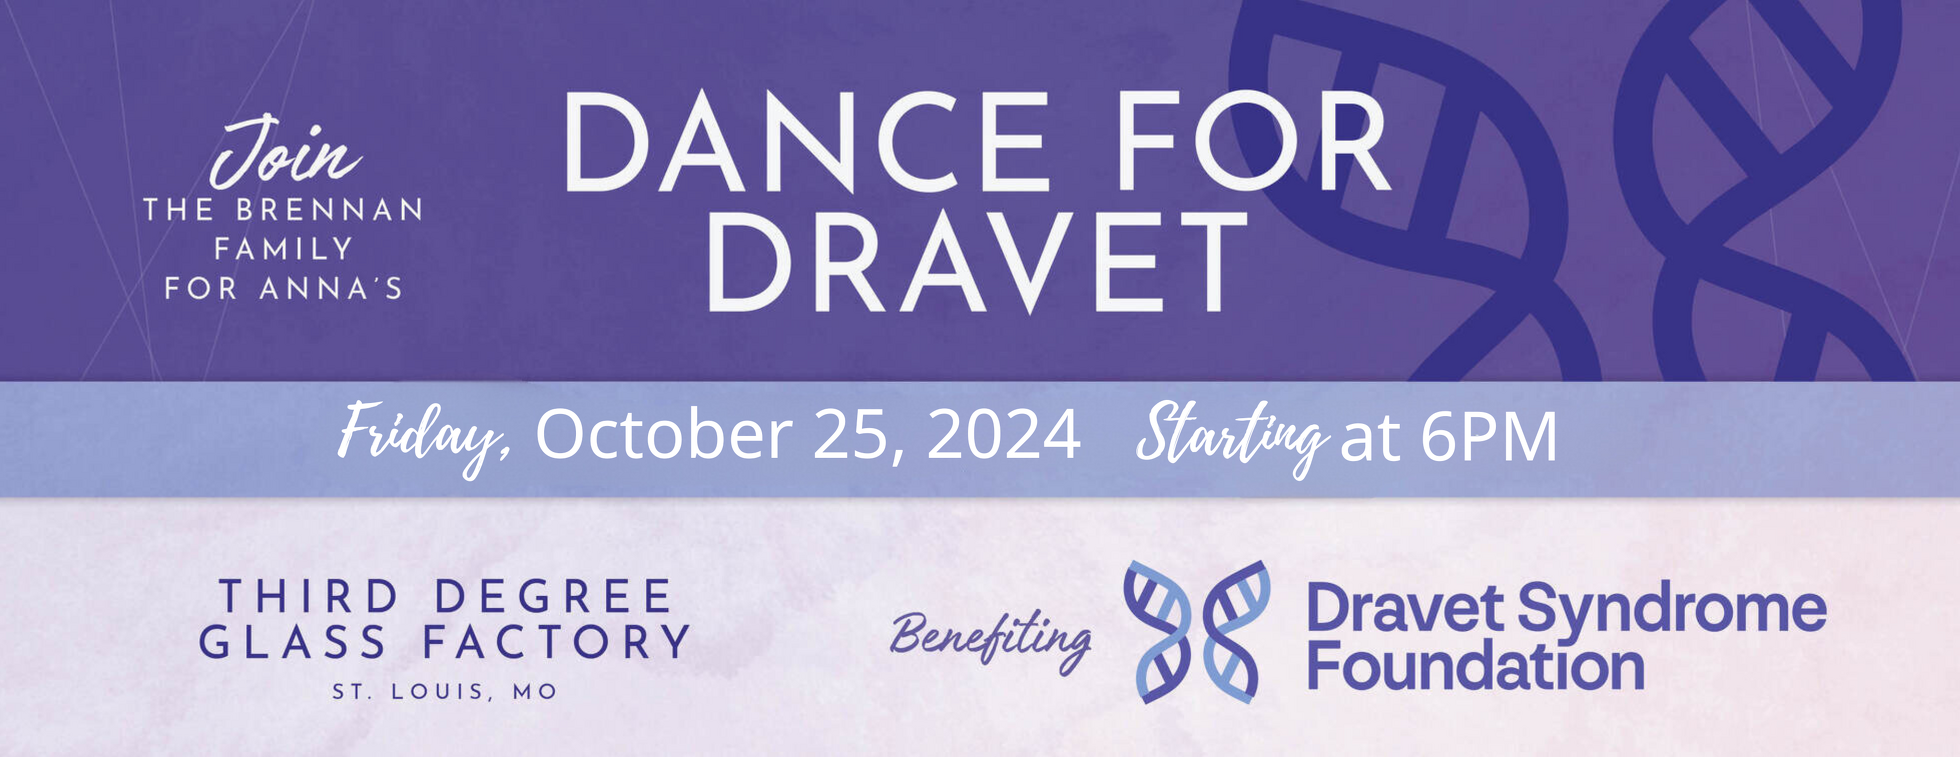 Dance for Dravet